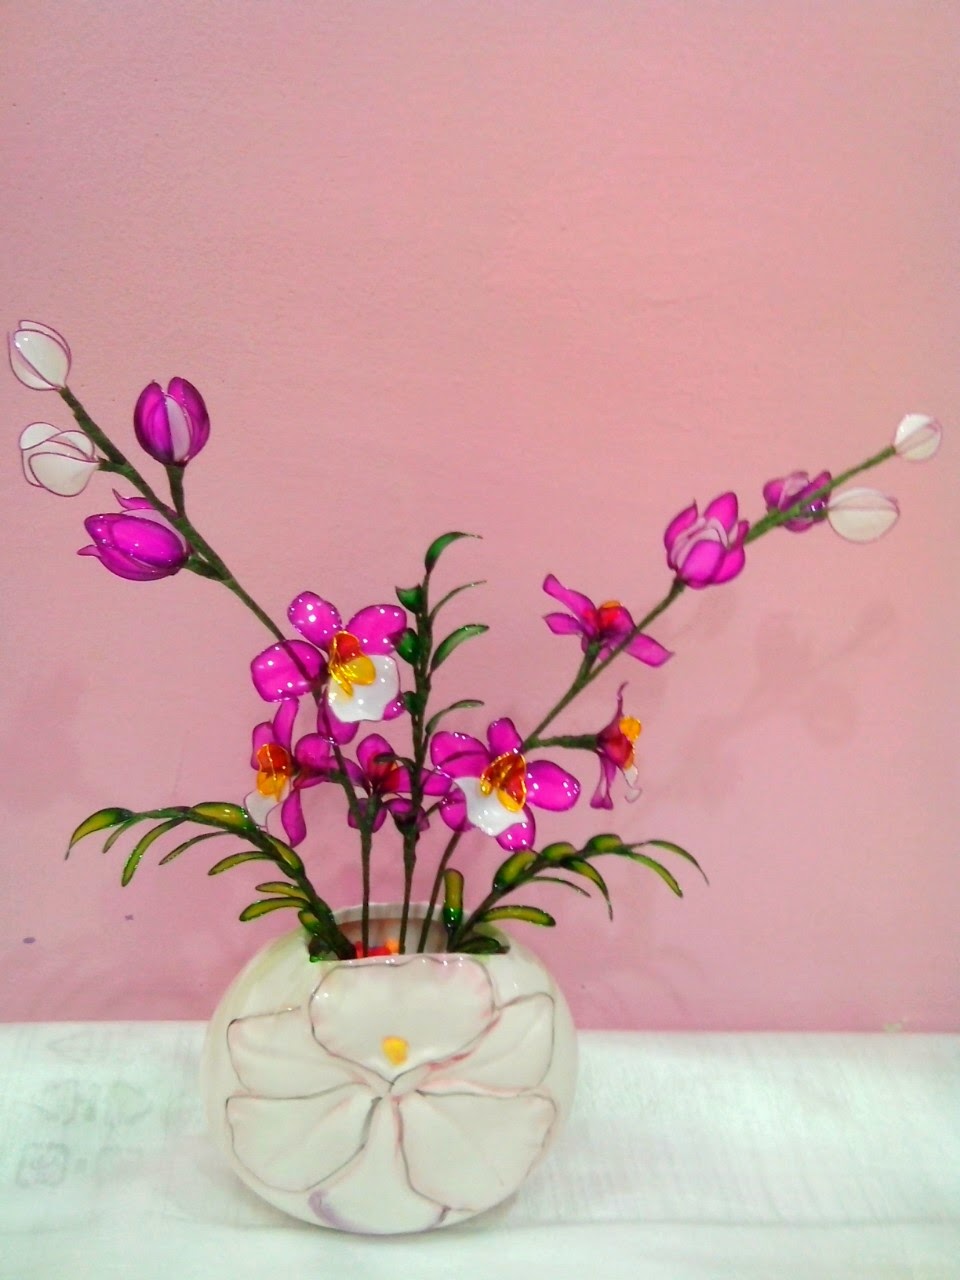 Bunga Pahar Dip & stokin Murah.D'myflora Craft: Bunga 